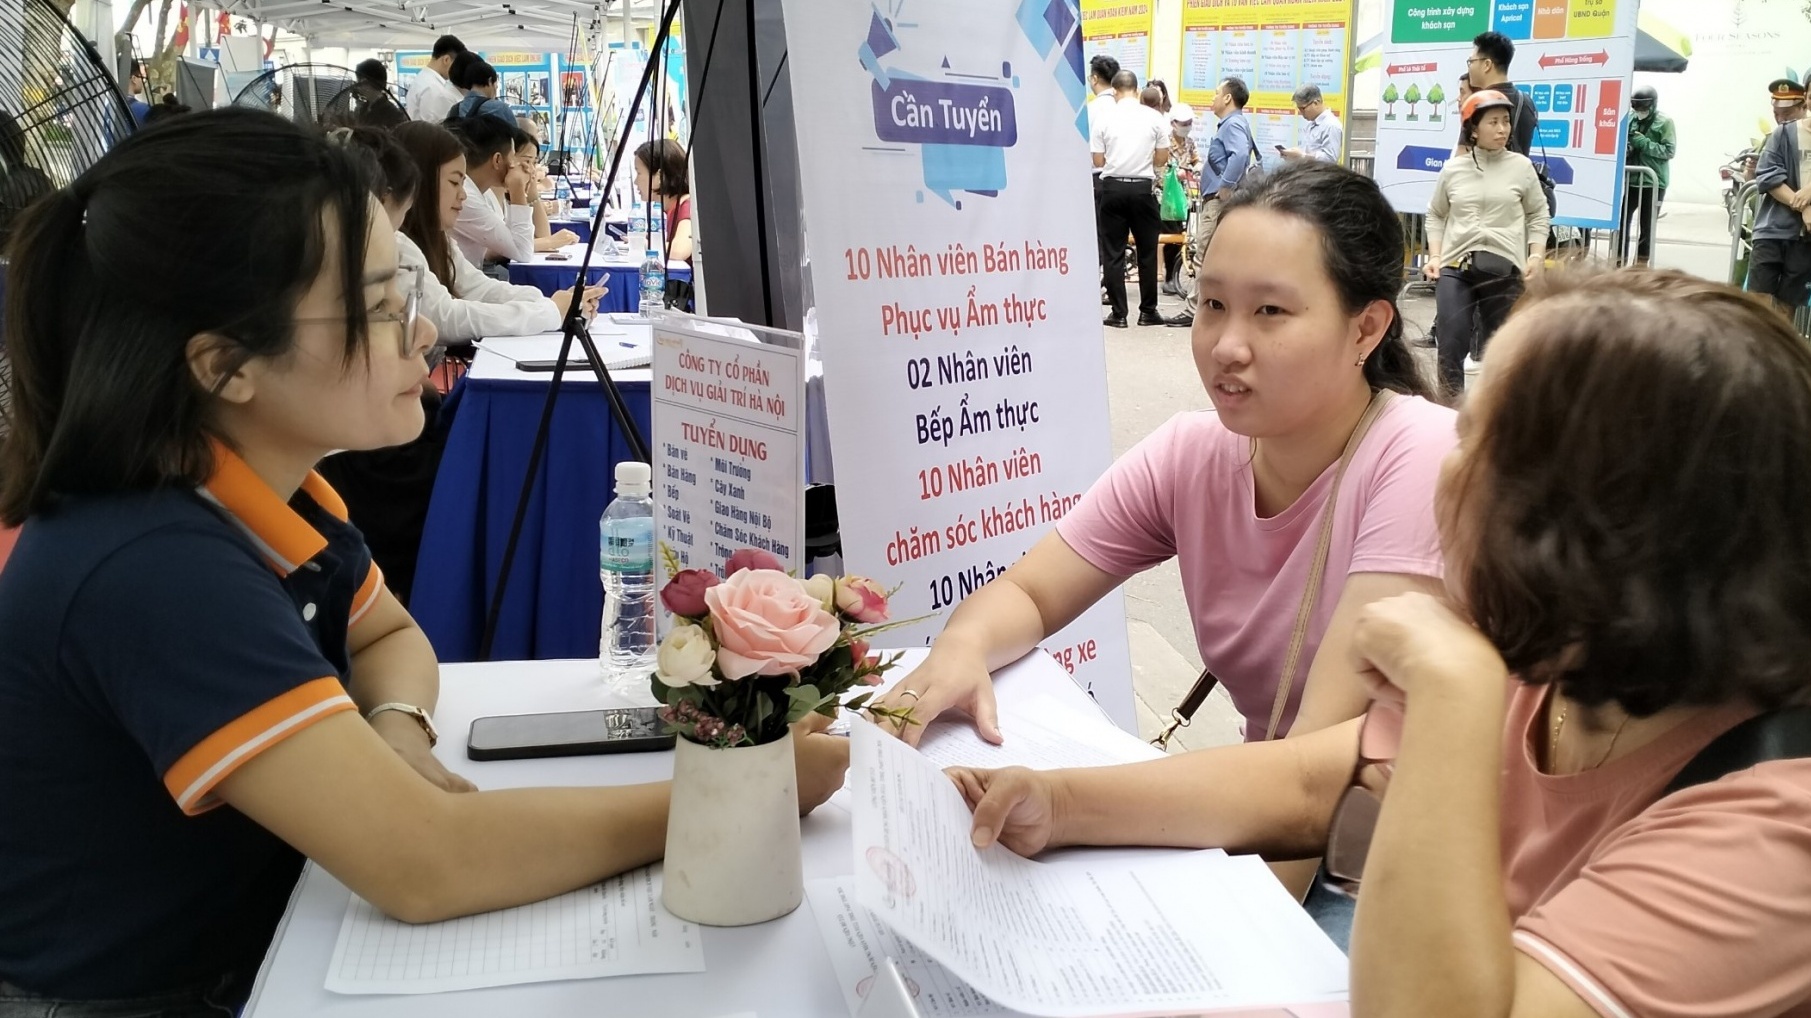 Cơ hội việc làm rộng mở tại quận trung tâm Hà Nội